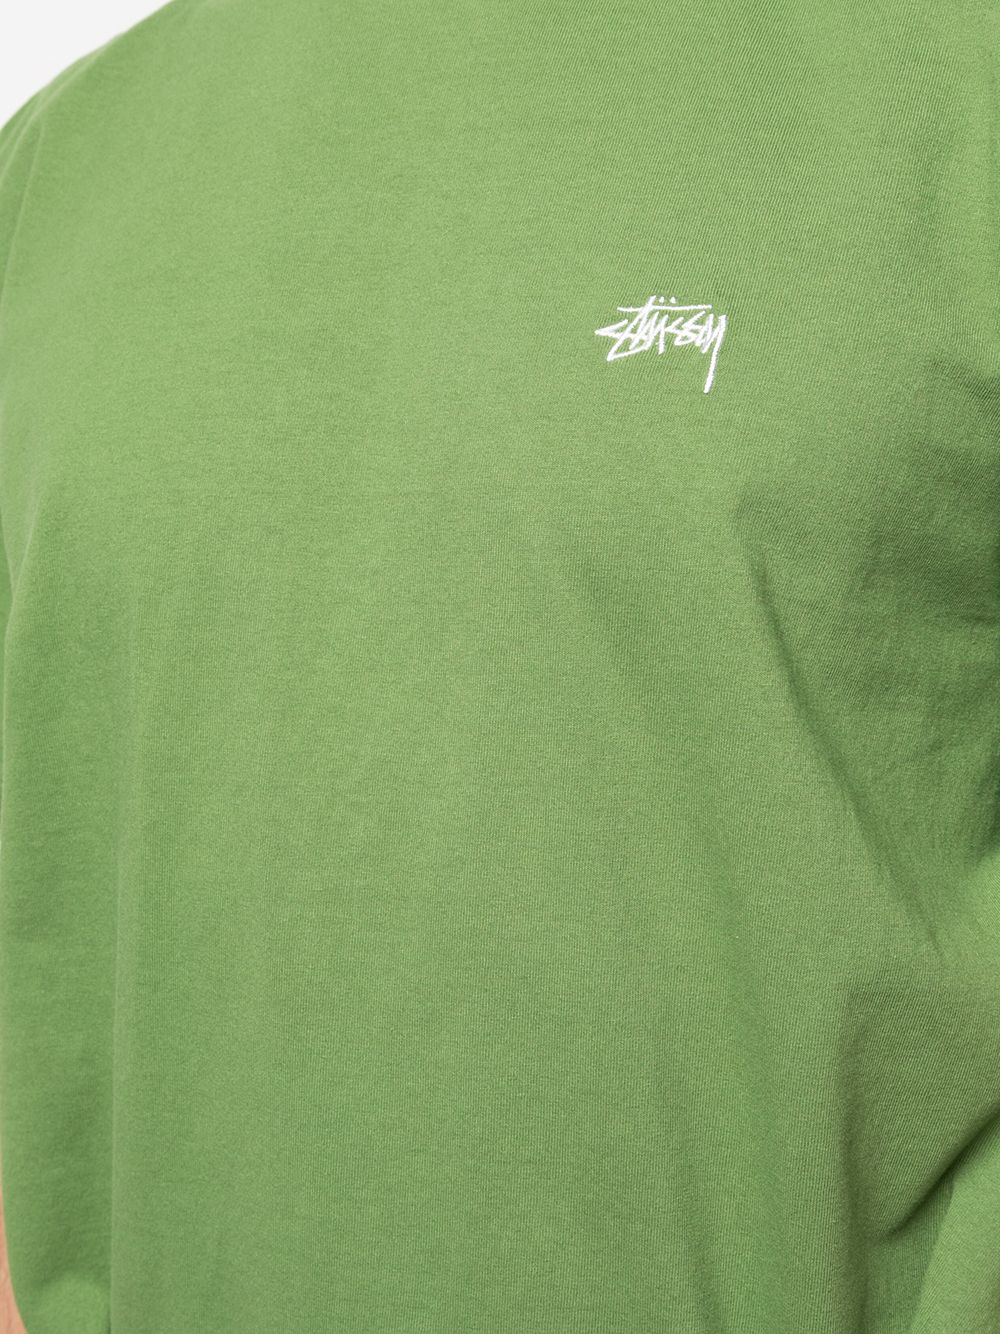 фото Stussy футболка с вышитым логотипом